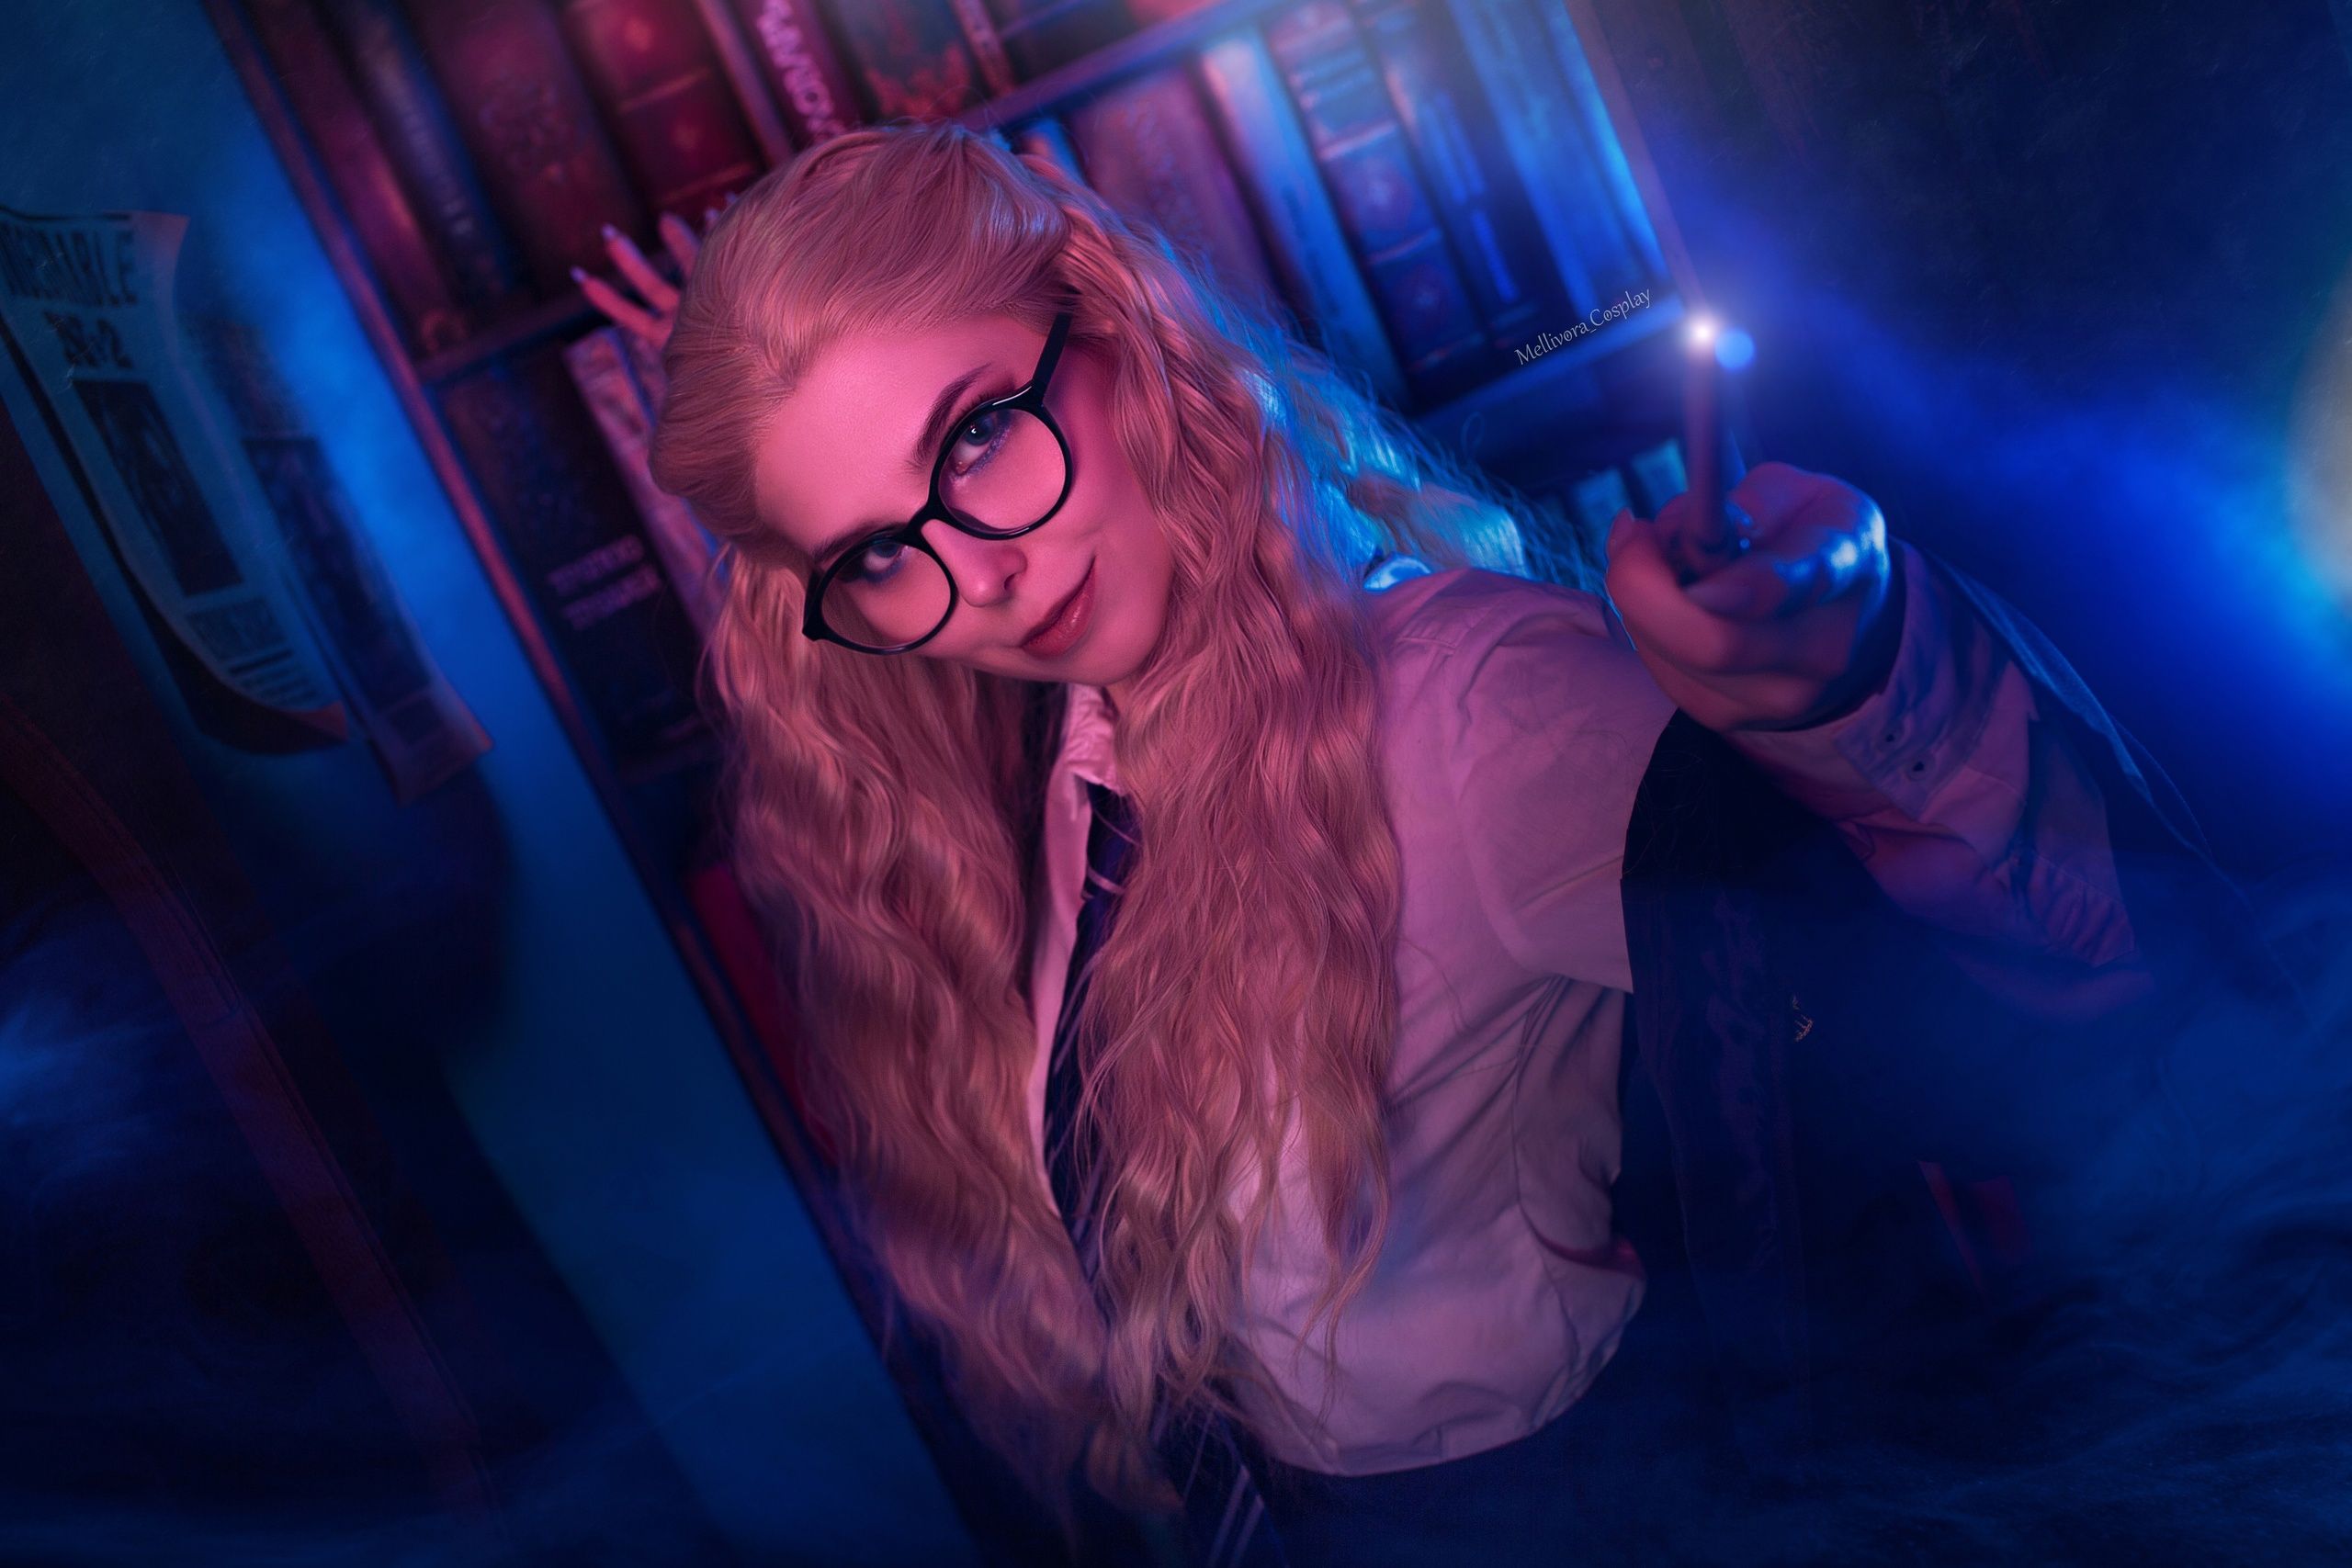 Развратная выпускница Когтеврана — косплей по мотивам «Гарри Поттера». Косплеер: Mellivora Cosplay. Фотограф: 412ART. Источник: vk.com/mellivora_cosplay